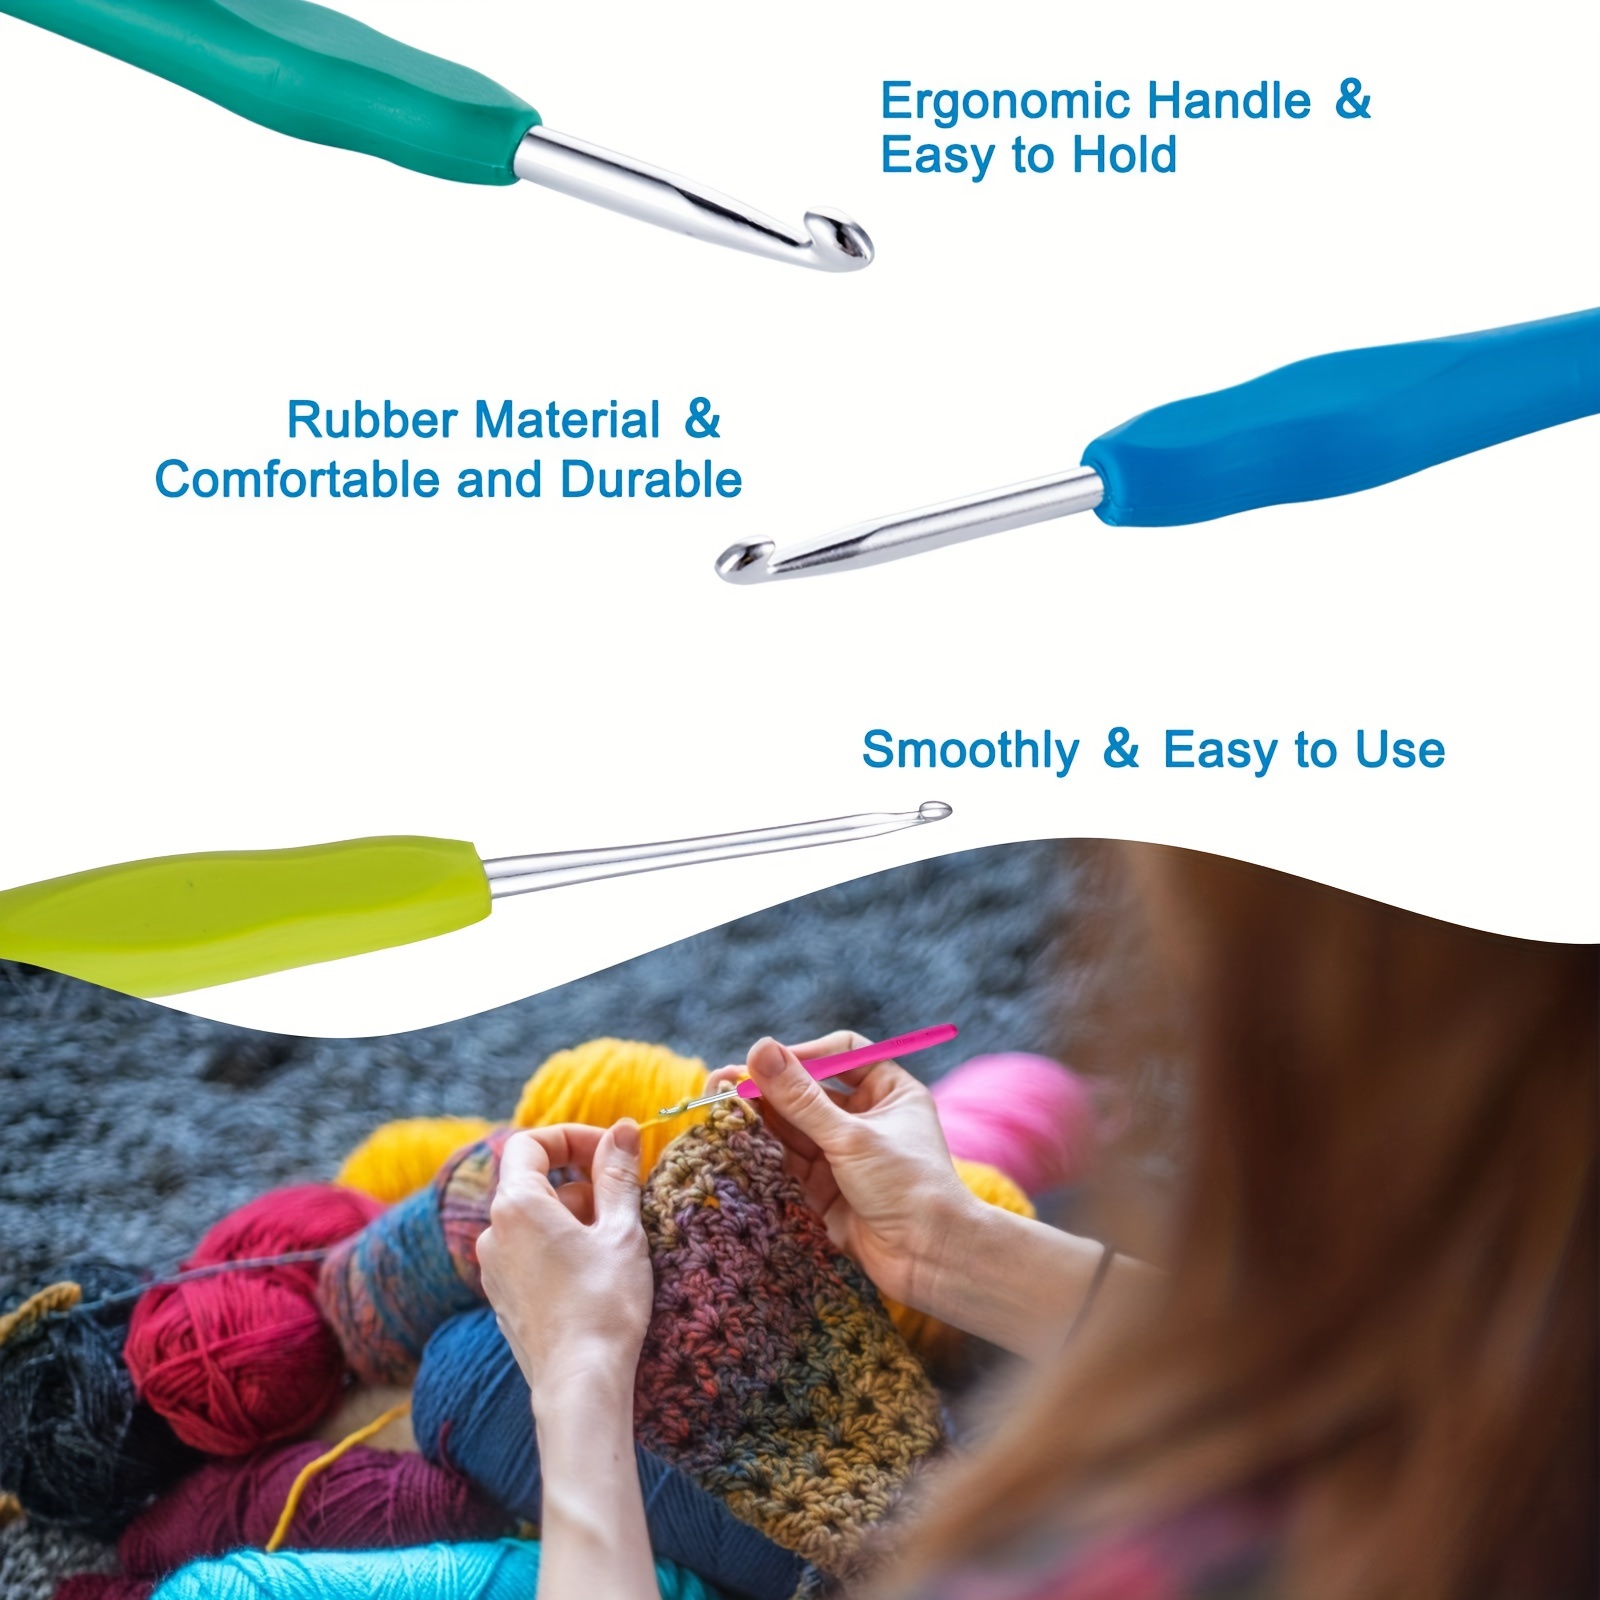 10Pcs Knitting Needles Crochet Hook - Multicolor Ergonomic Crochet Hooks  Set - Rubber Handled Aluminum Crochet Hooks - Small Crochet Hooks Knitting